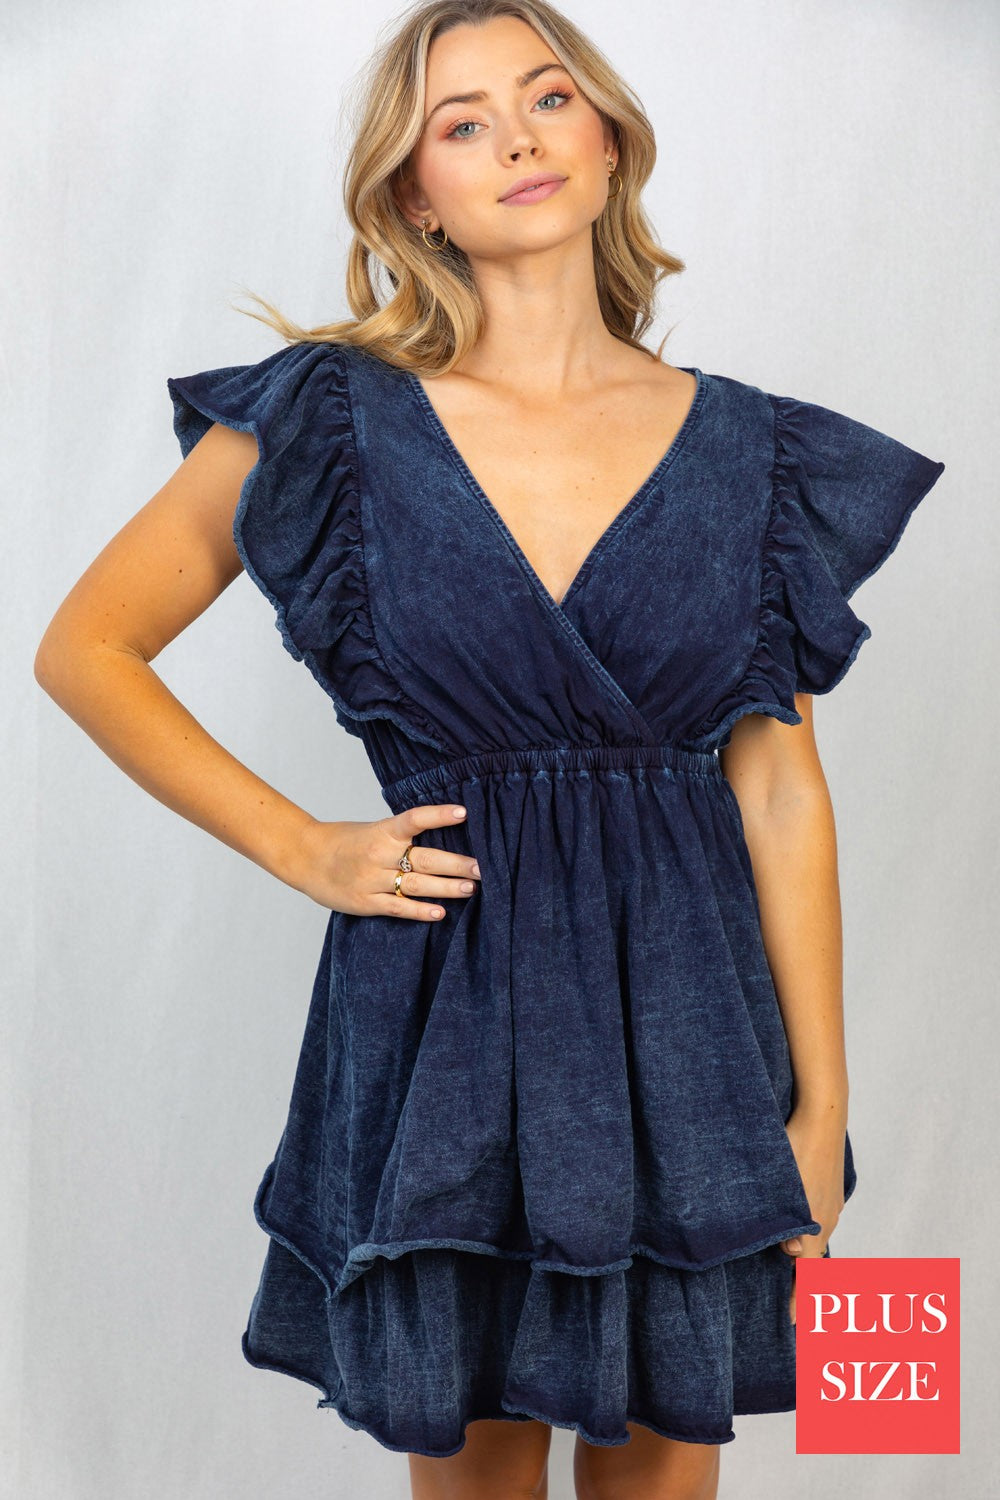 SALE - Acid Wash Blue Short Flutter Sleeve Solid Knit Dress - Curvy Size